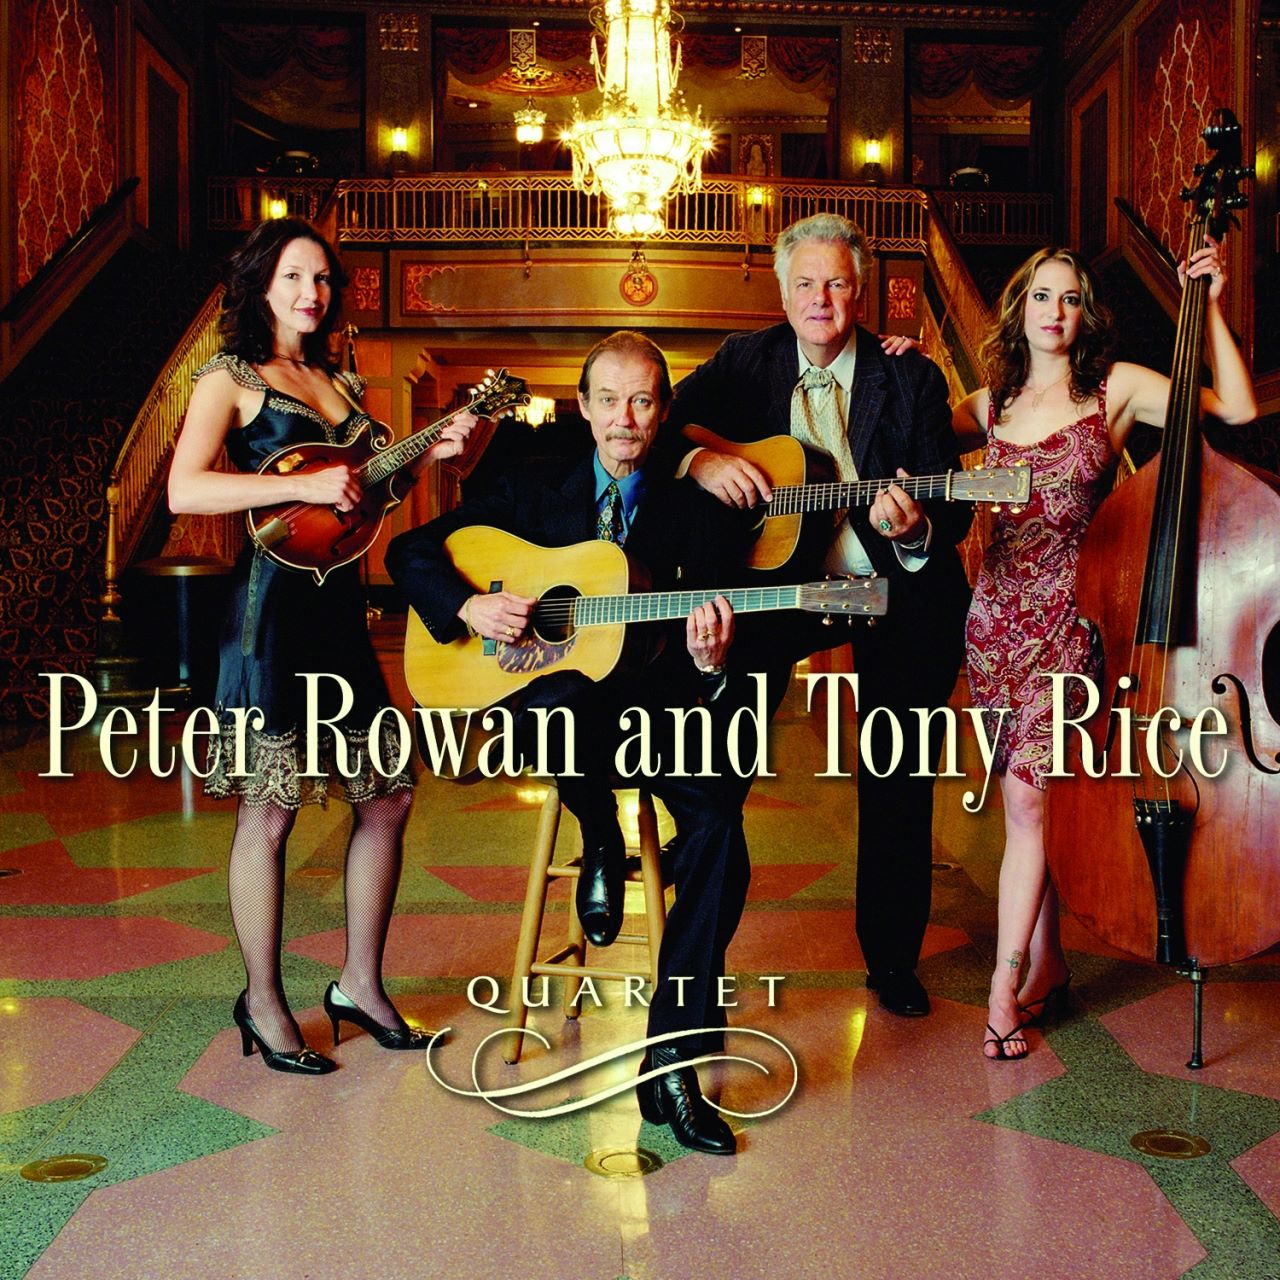 Peter Rowan & Tony Rice – Quartet cover album